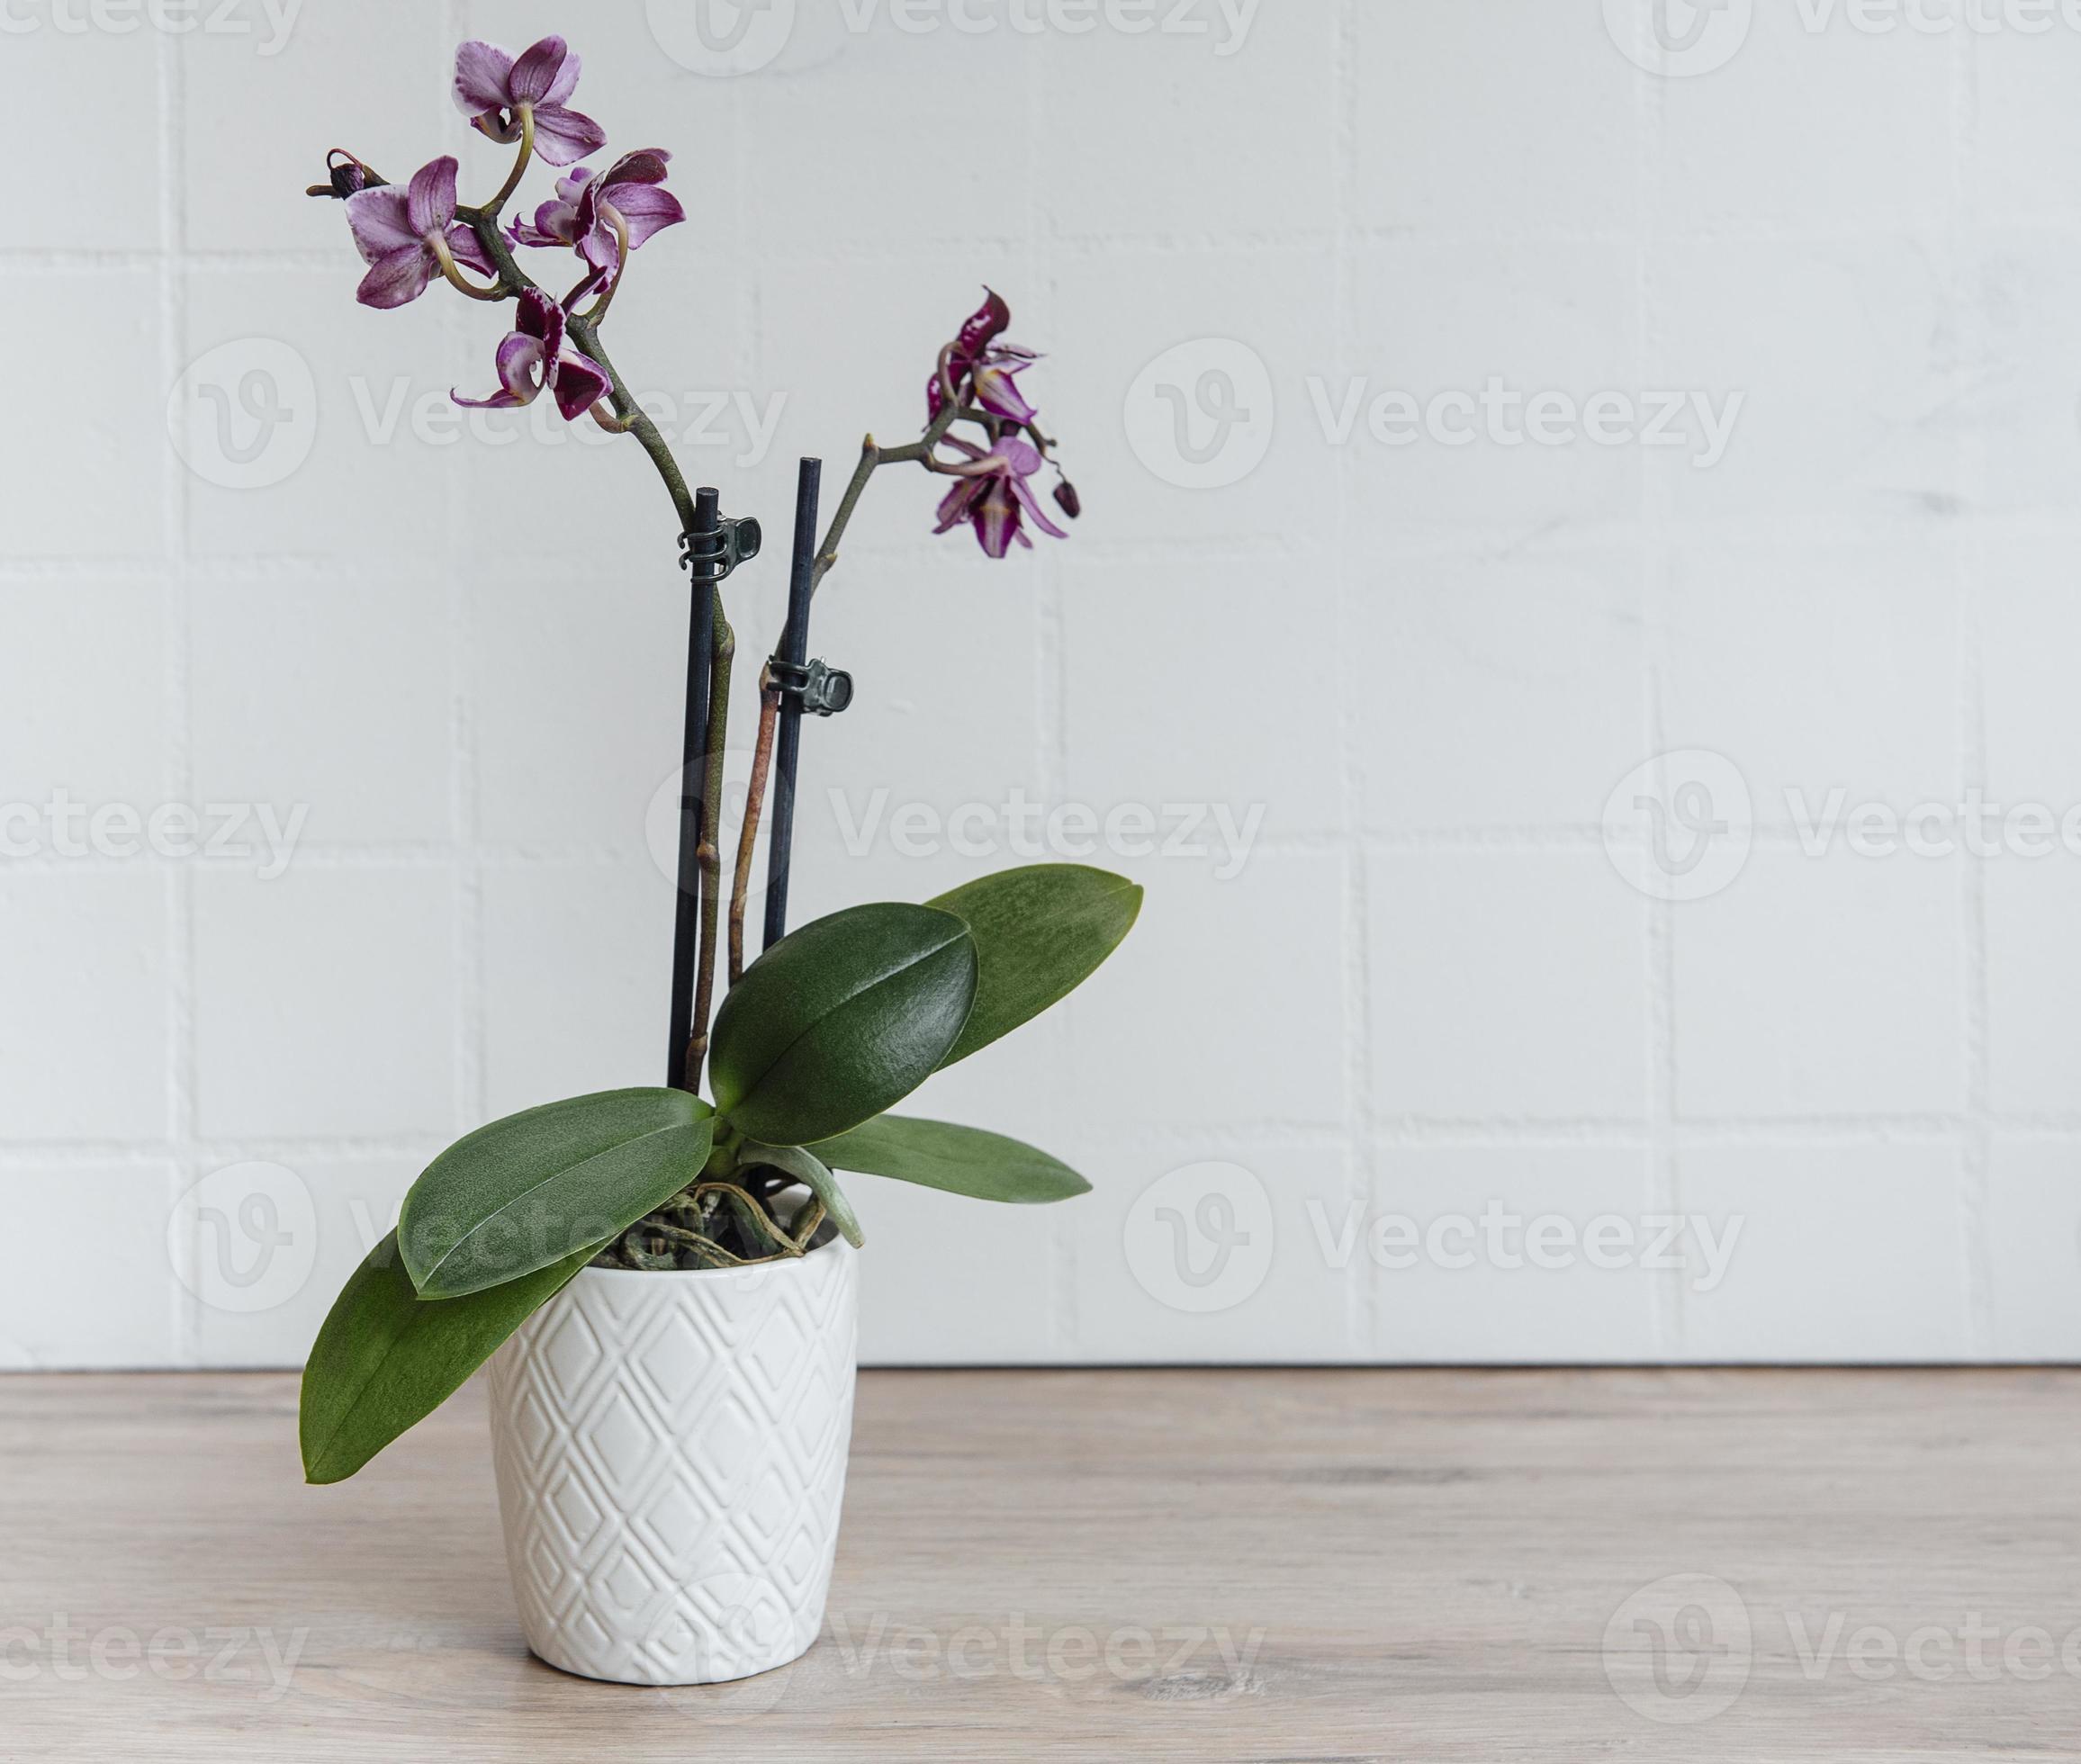 orquídeas roxas em um vaso branco 2288085 Foto de stock no Vecteezy